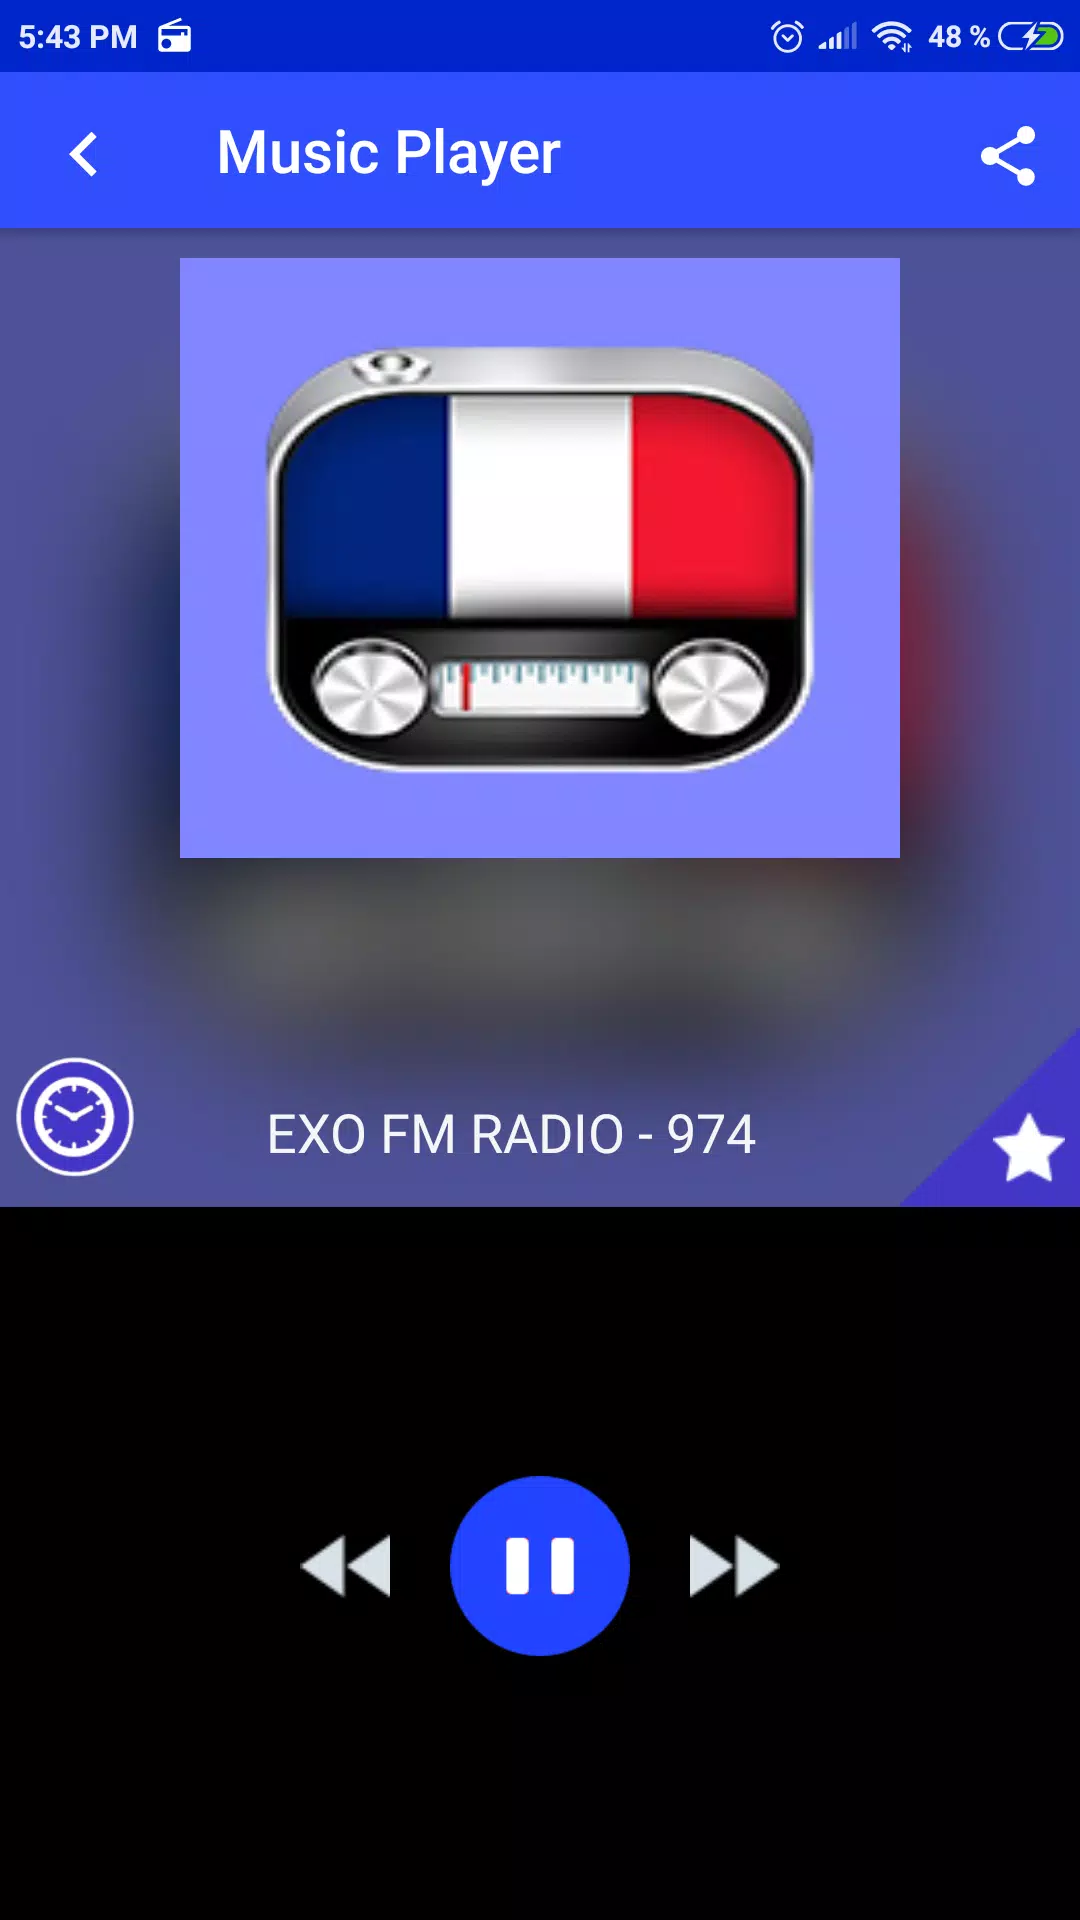 exo fm radio 974 App FR en ligne APK pour Android Télécharger